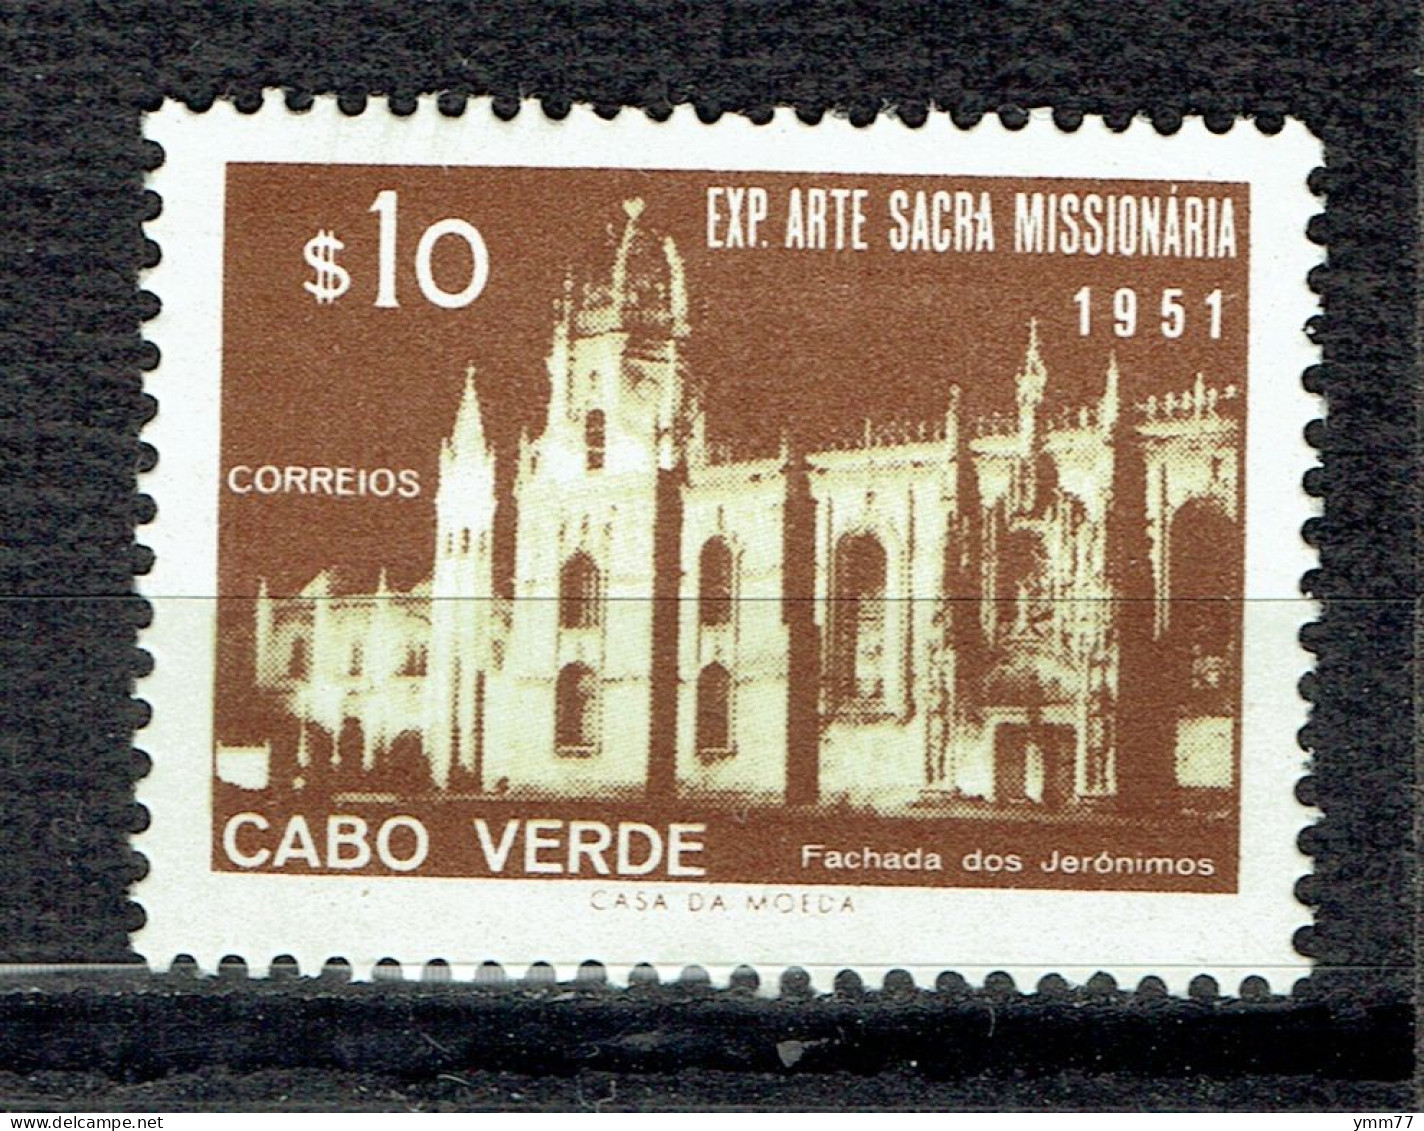 Exposition D'art Missionnaire à Lisbonne : Couvent Des Jéronimes - Cape Verde